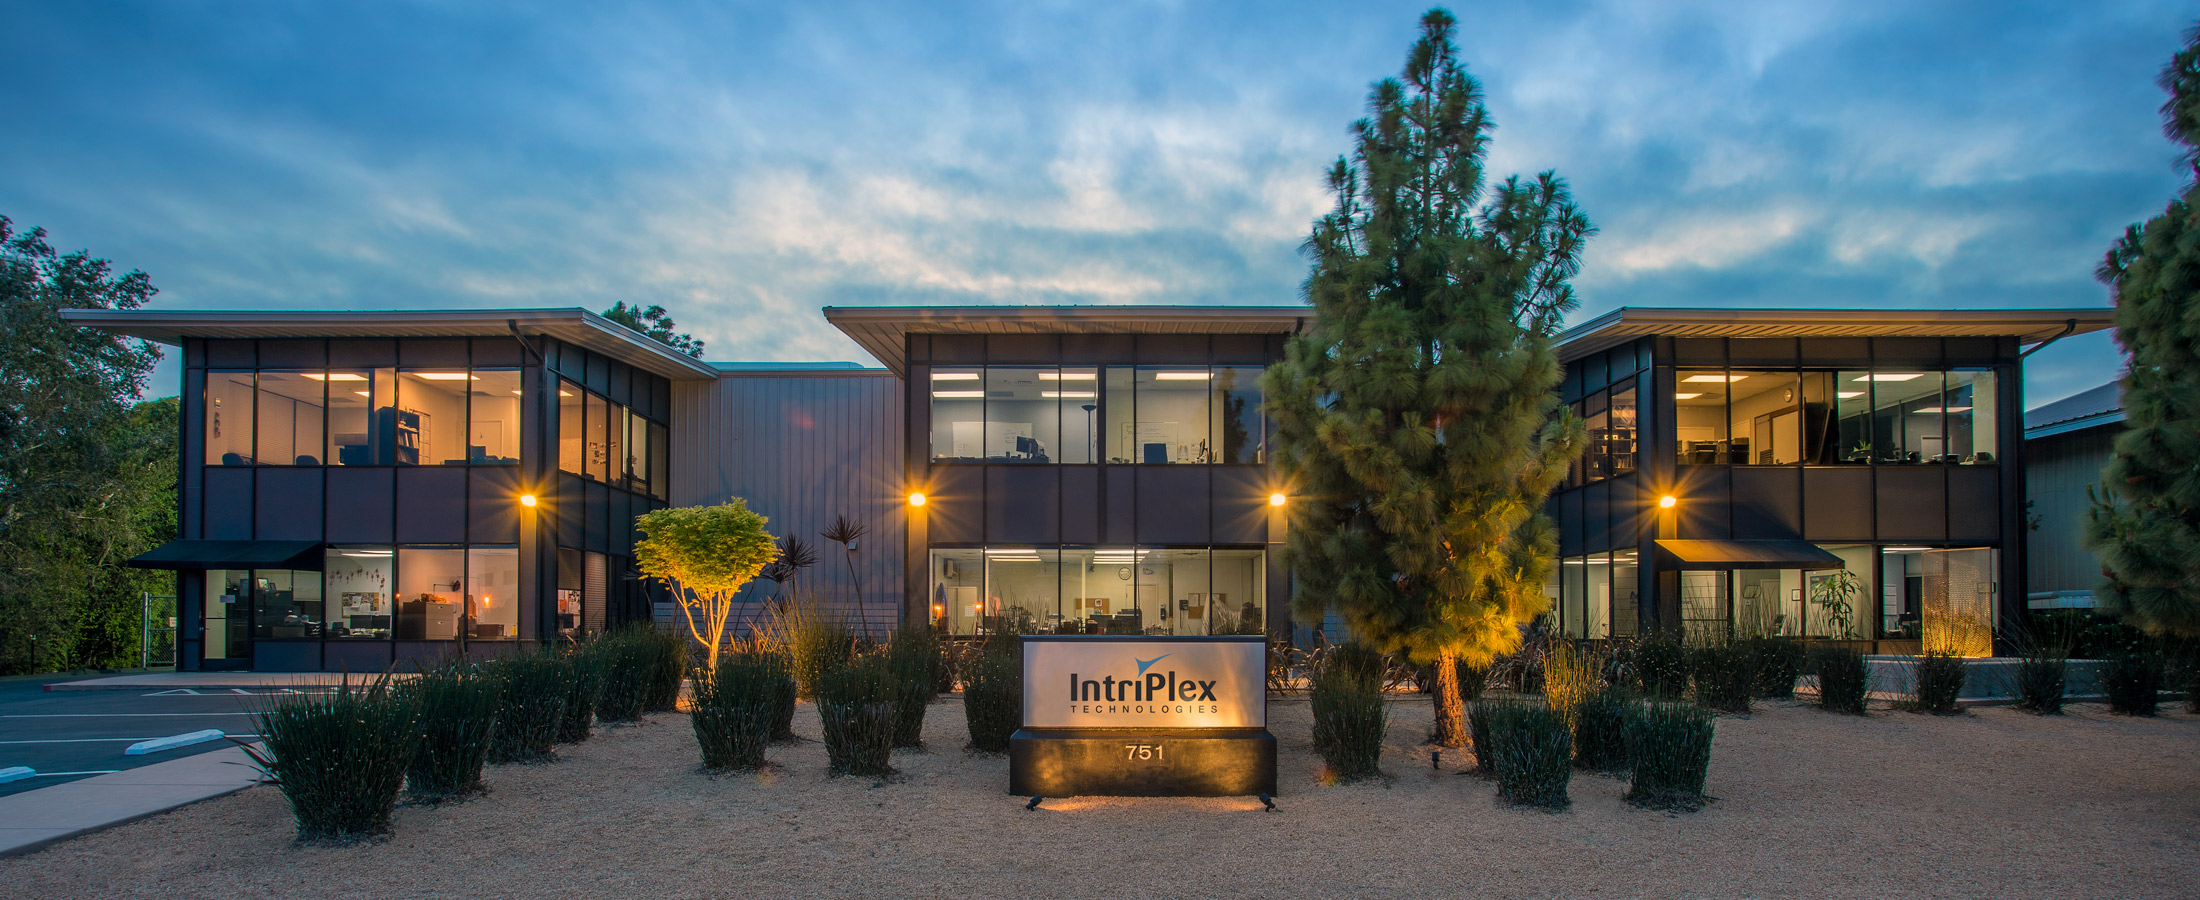 Edificio de las oficinas centrales de IntriPlex Technologies en Santa Bárbara, California.